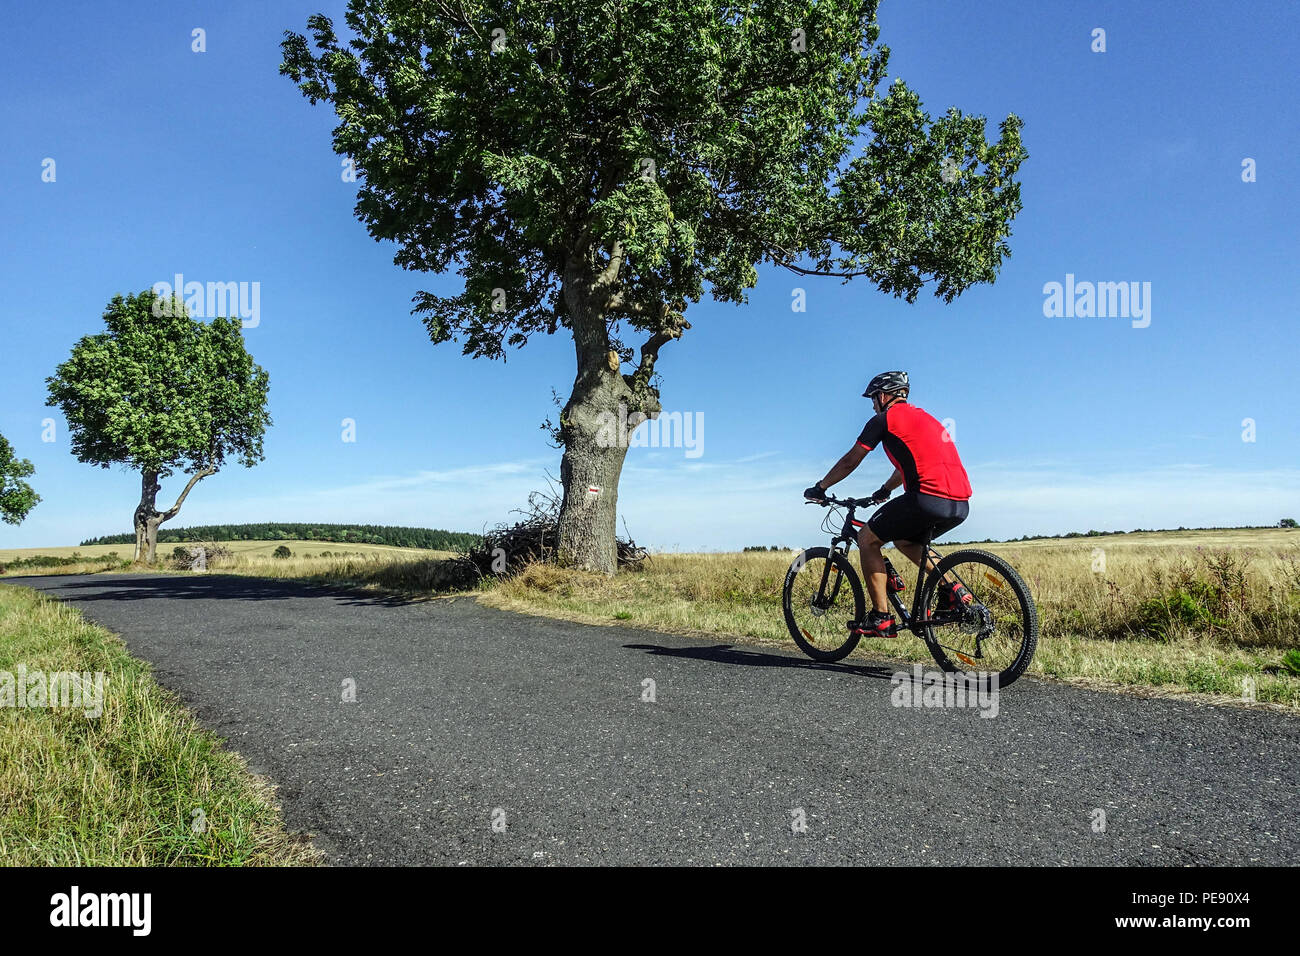 Homme faire du vélo, Biker sur une route de campagne, montagnes Krusne Hory, montagnes Ore, République tchèque cyclisme paysage d'été Banque D'Images